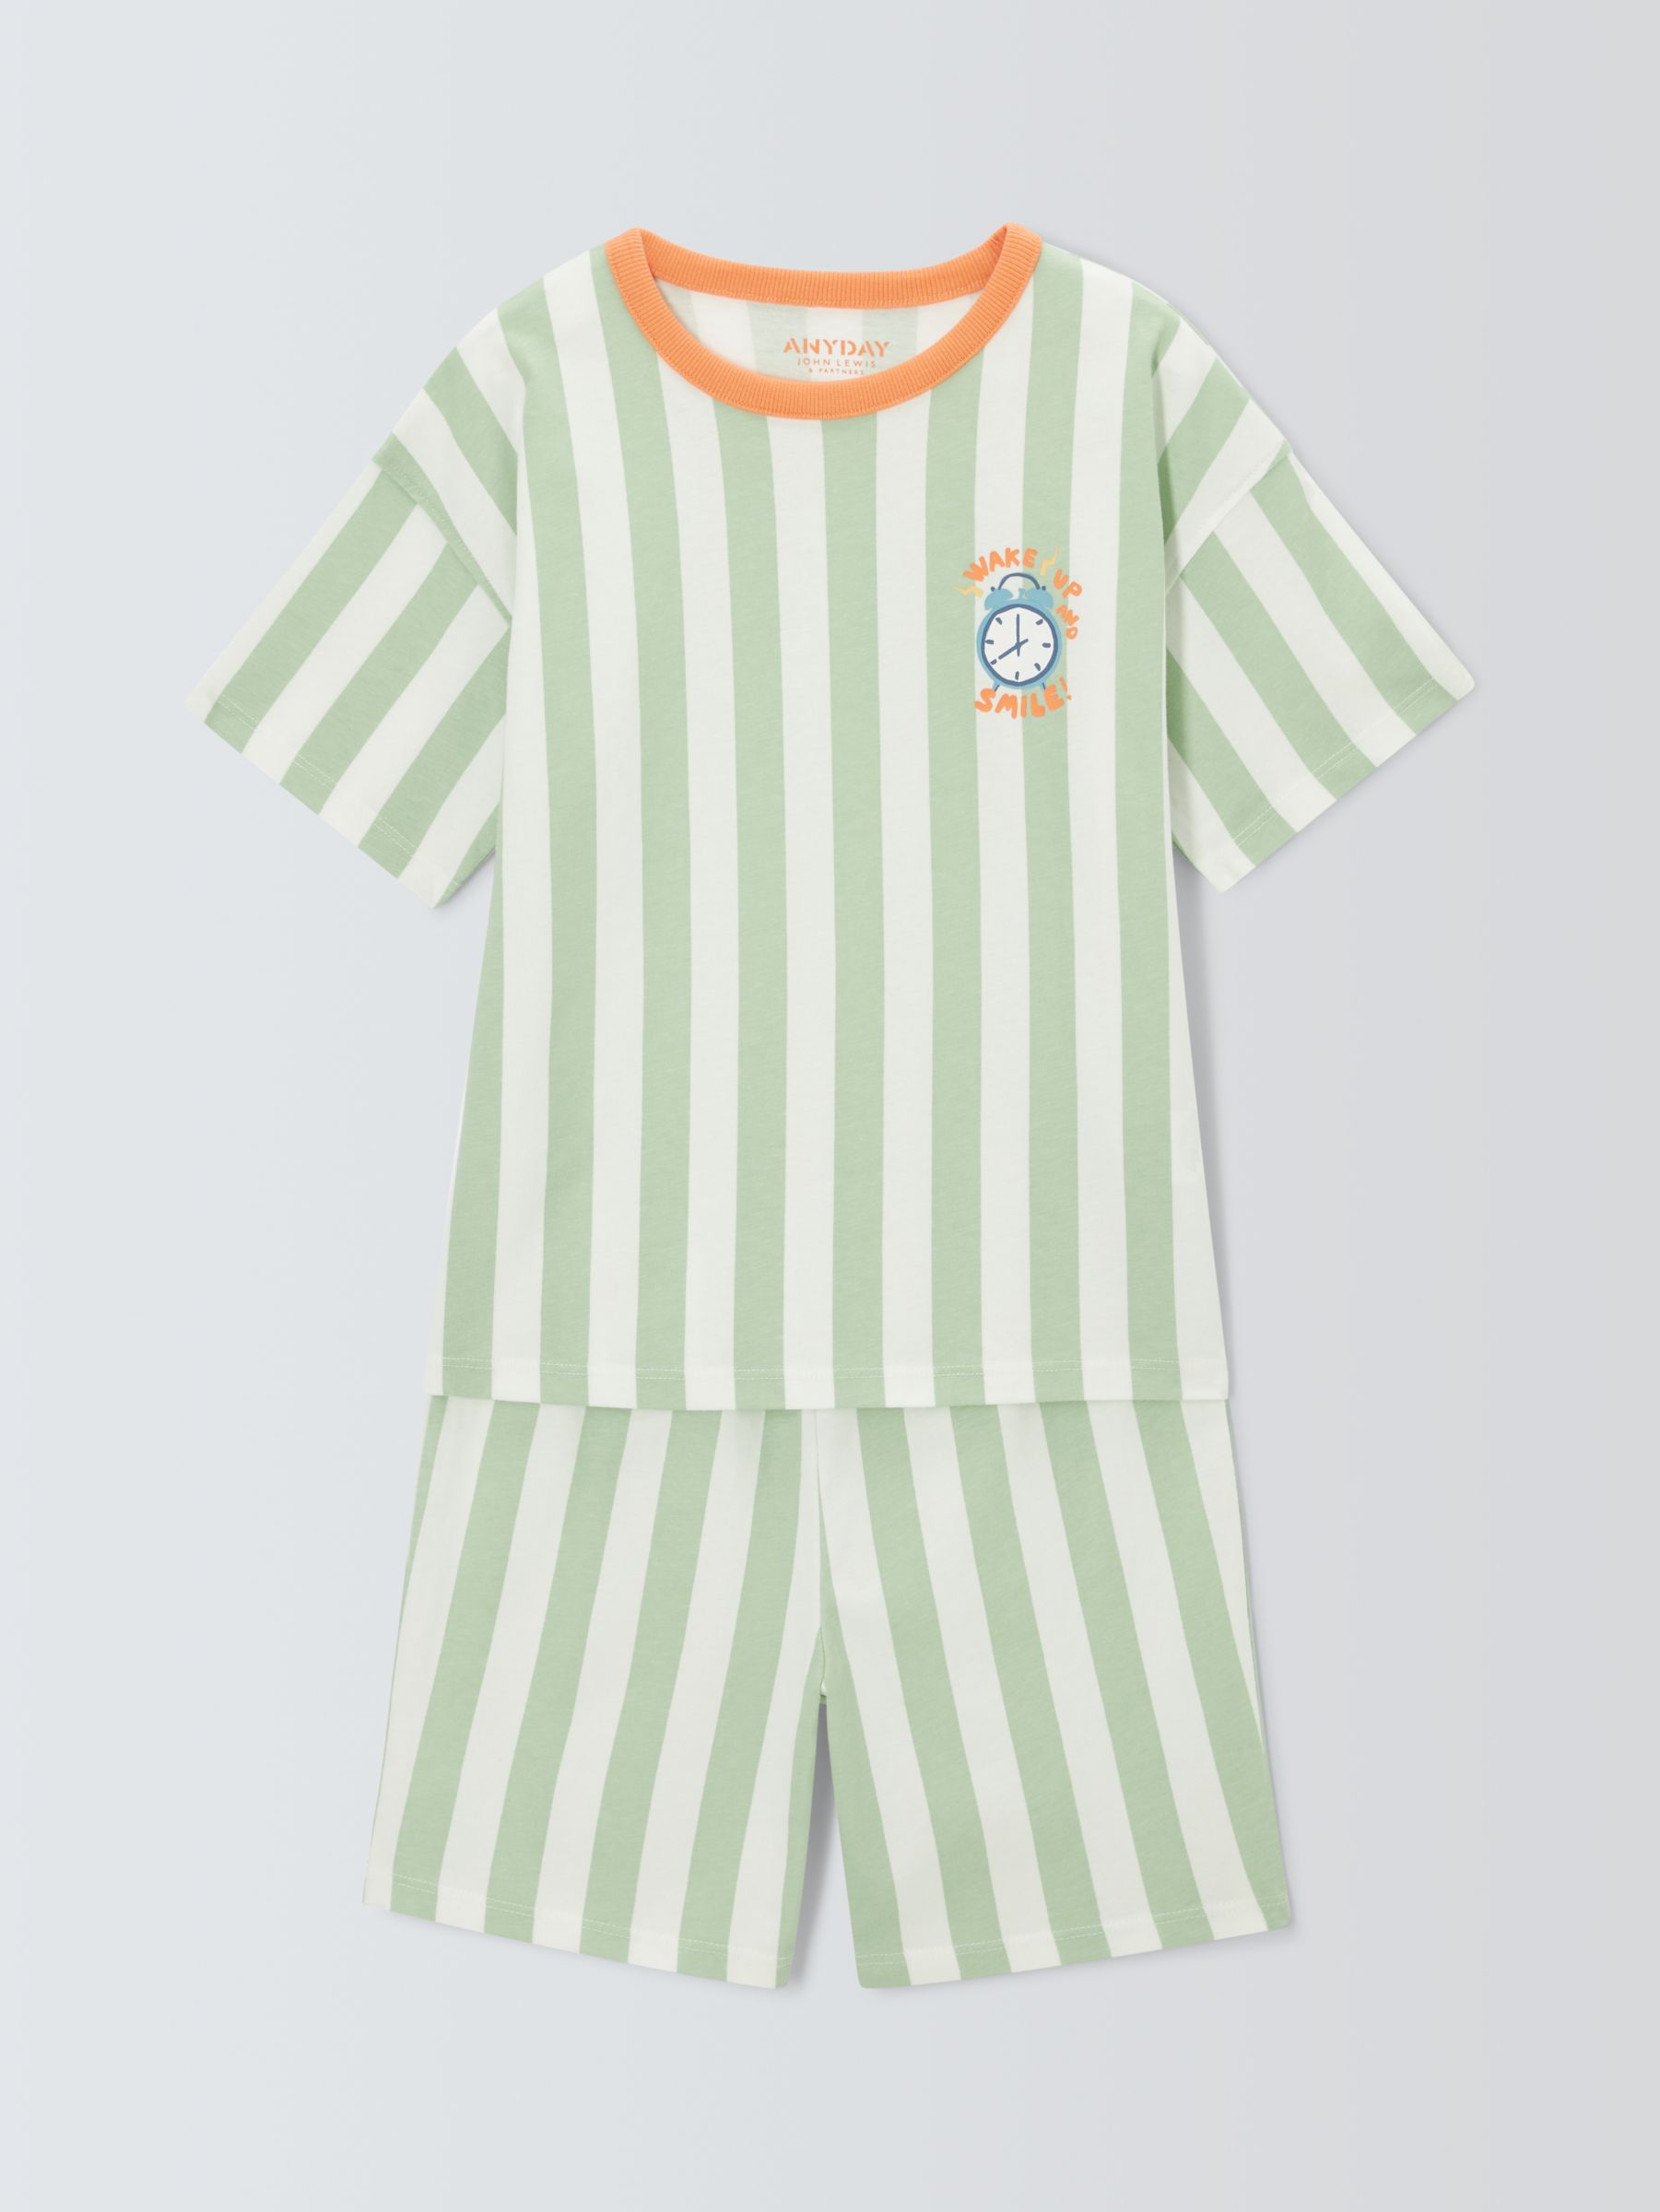 John Lewis ANYDAY Kids' Clock Vertical Stripe Short Pyjamas, Green, 5 years